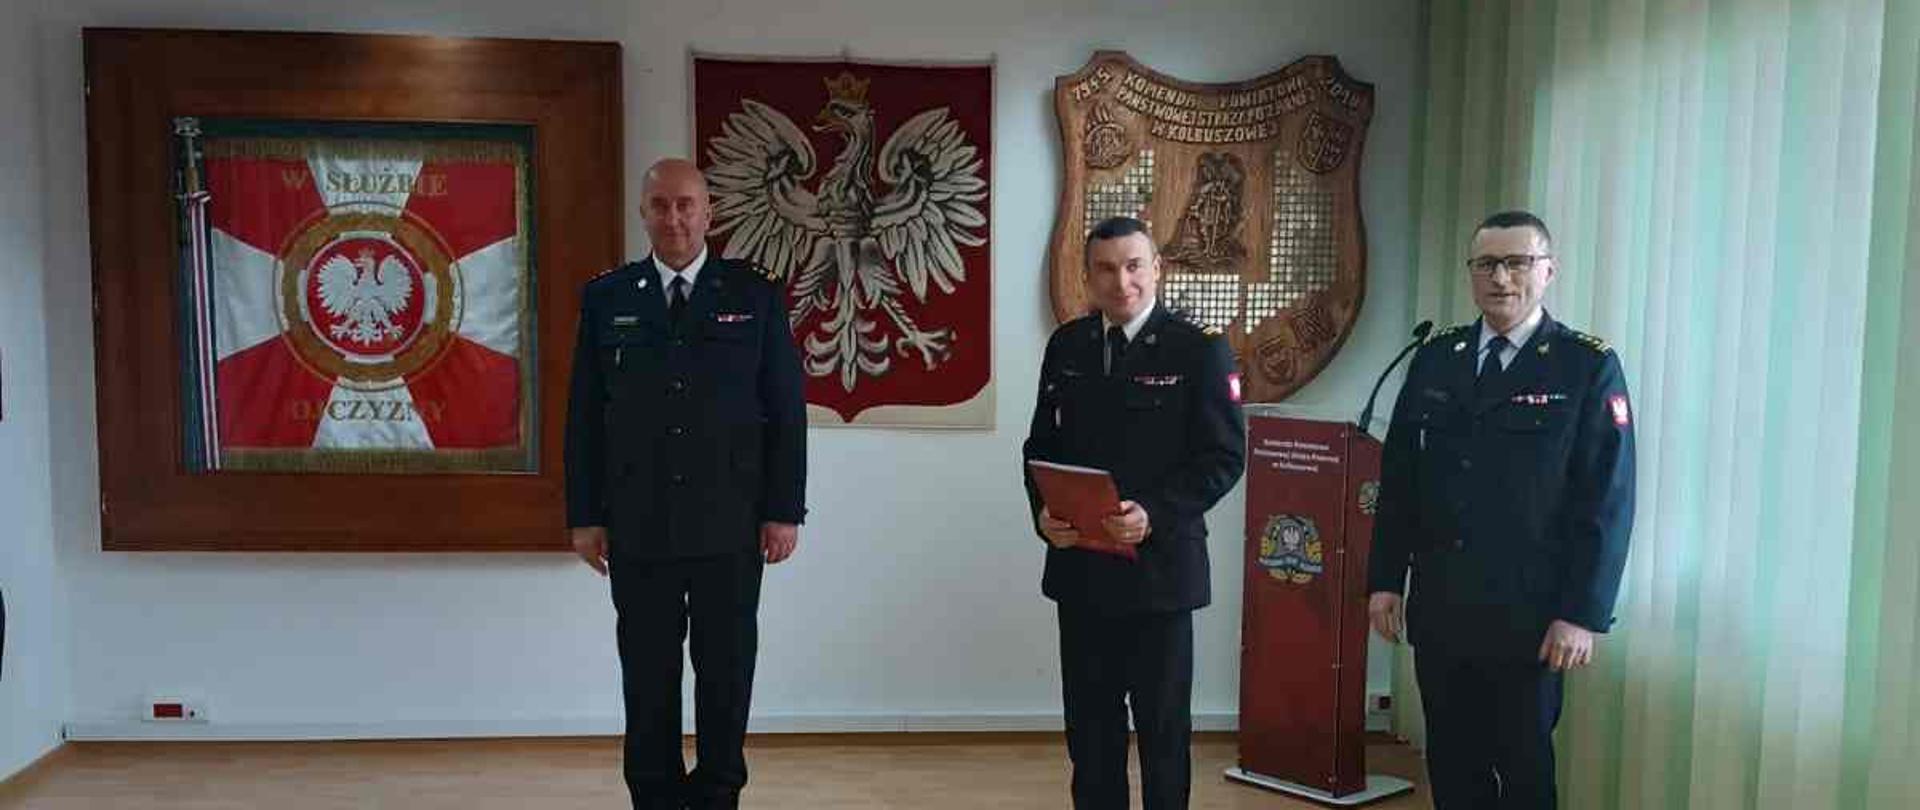 W pomieszczeniu stoi trzech strażaków w mundurach - jeden z nich trzyma czerwoną teczkę. W tle na ścianie sztandar i godło Polski.